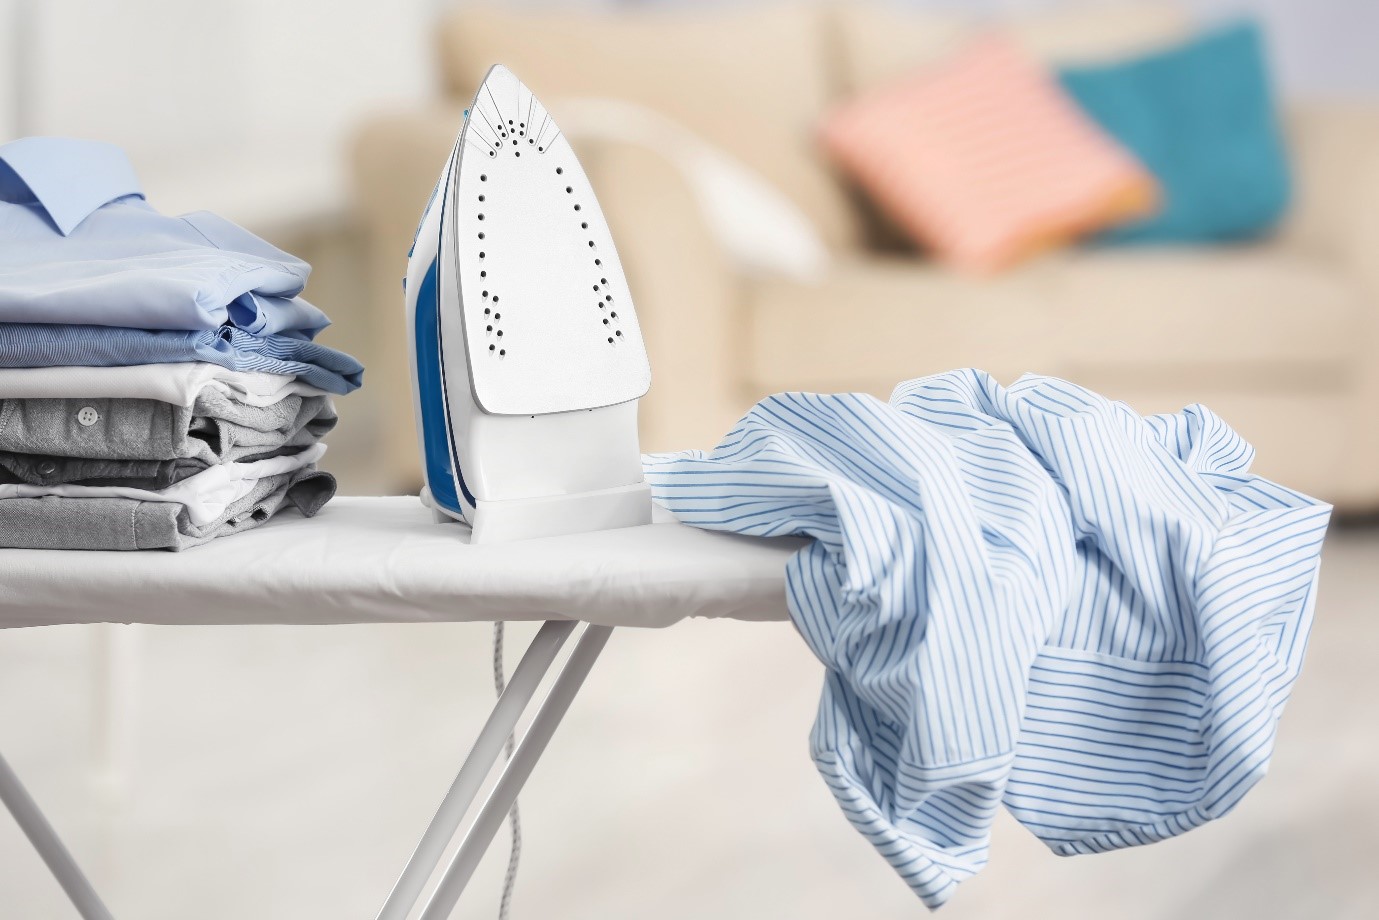 How to make ironing enjoyable